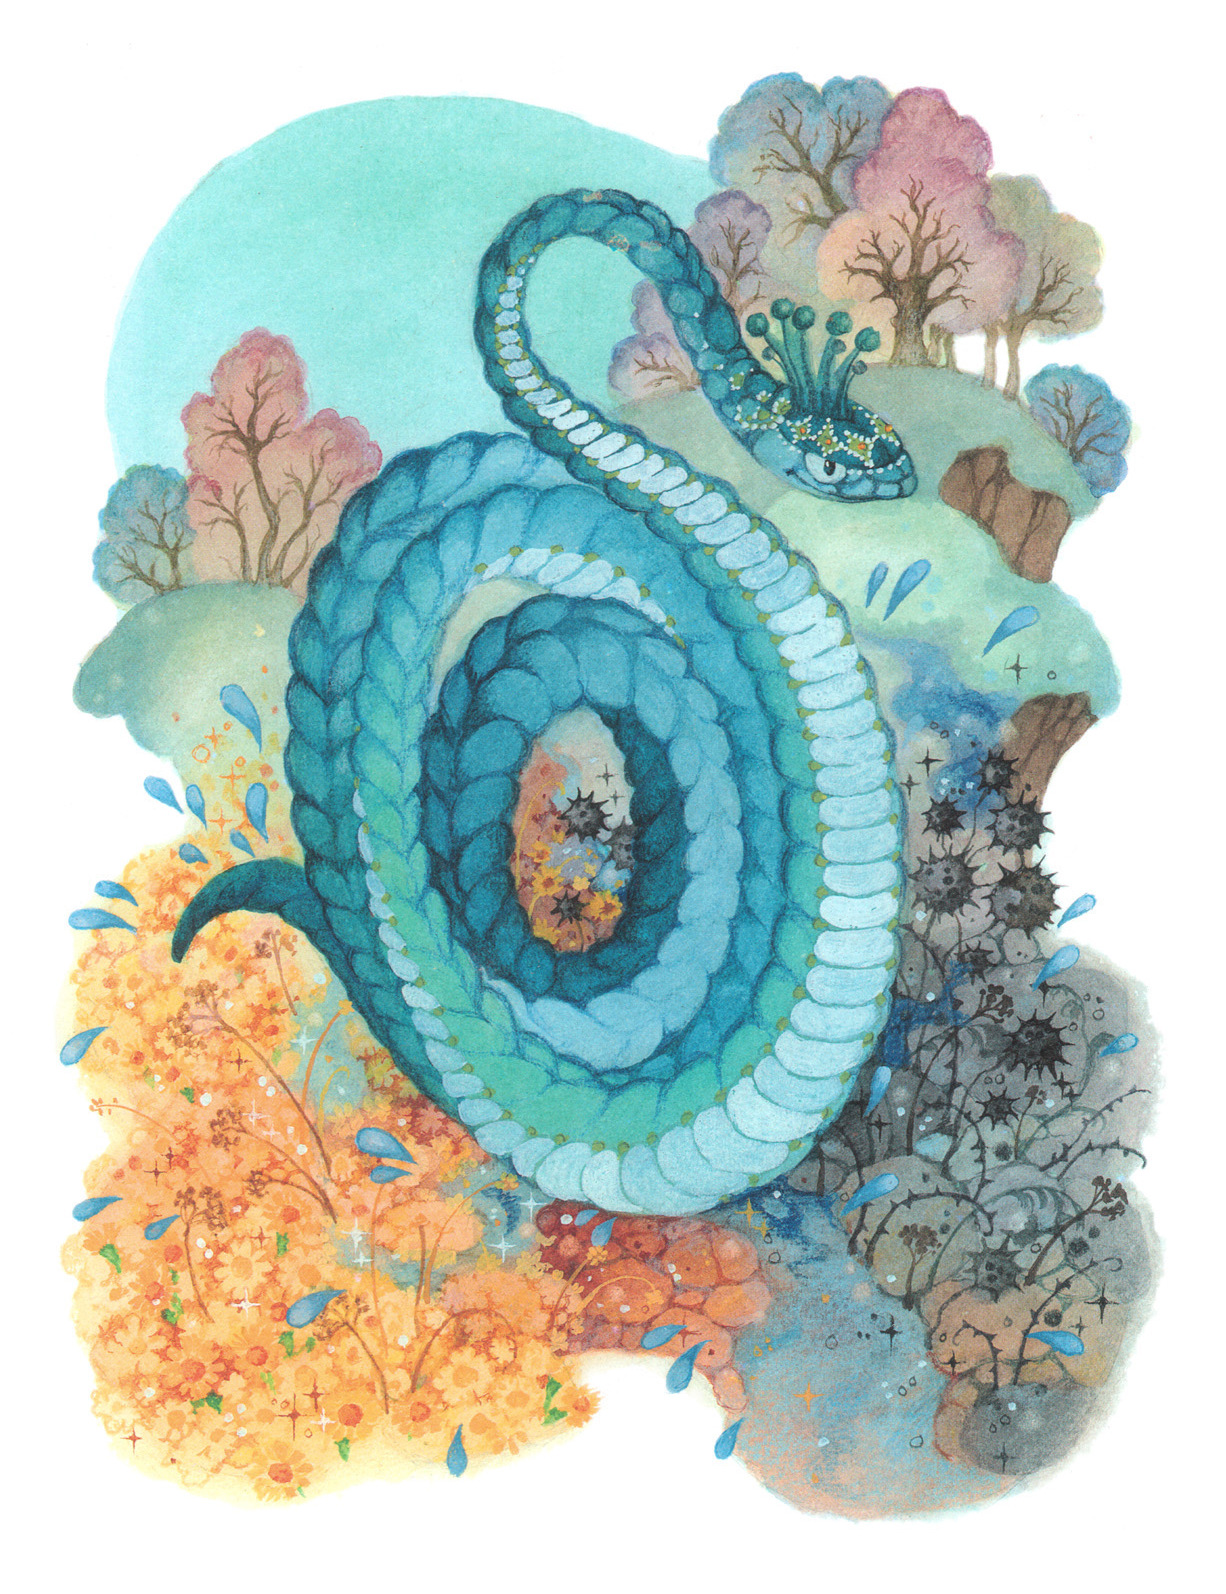 Читательский дневник «голубая змейка» павла бажова